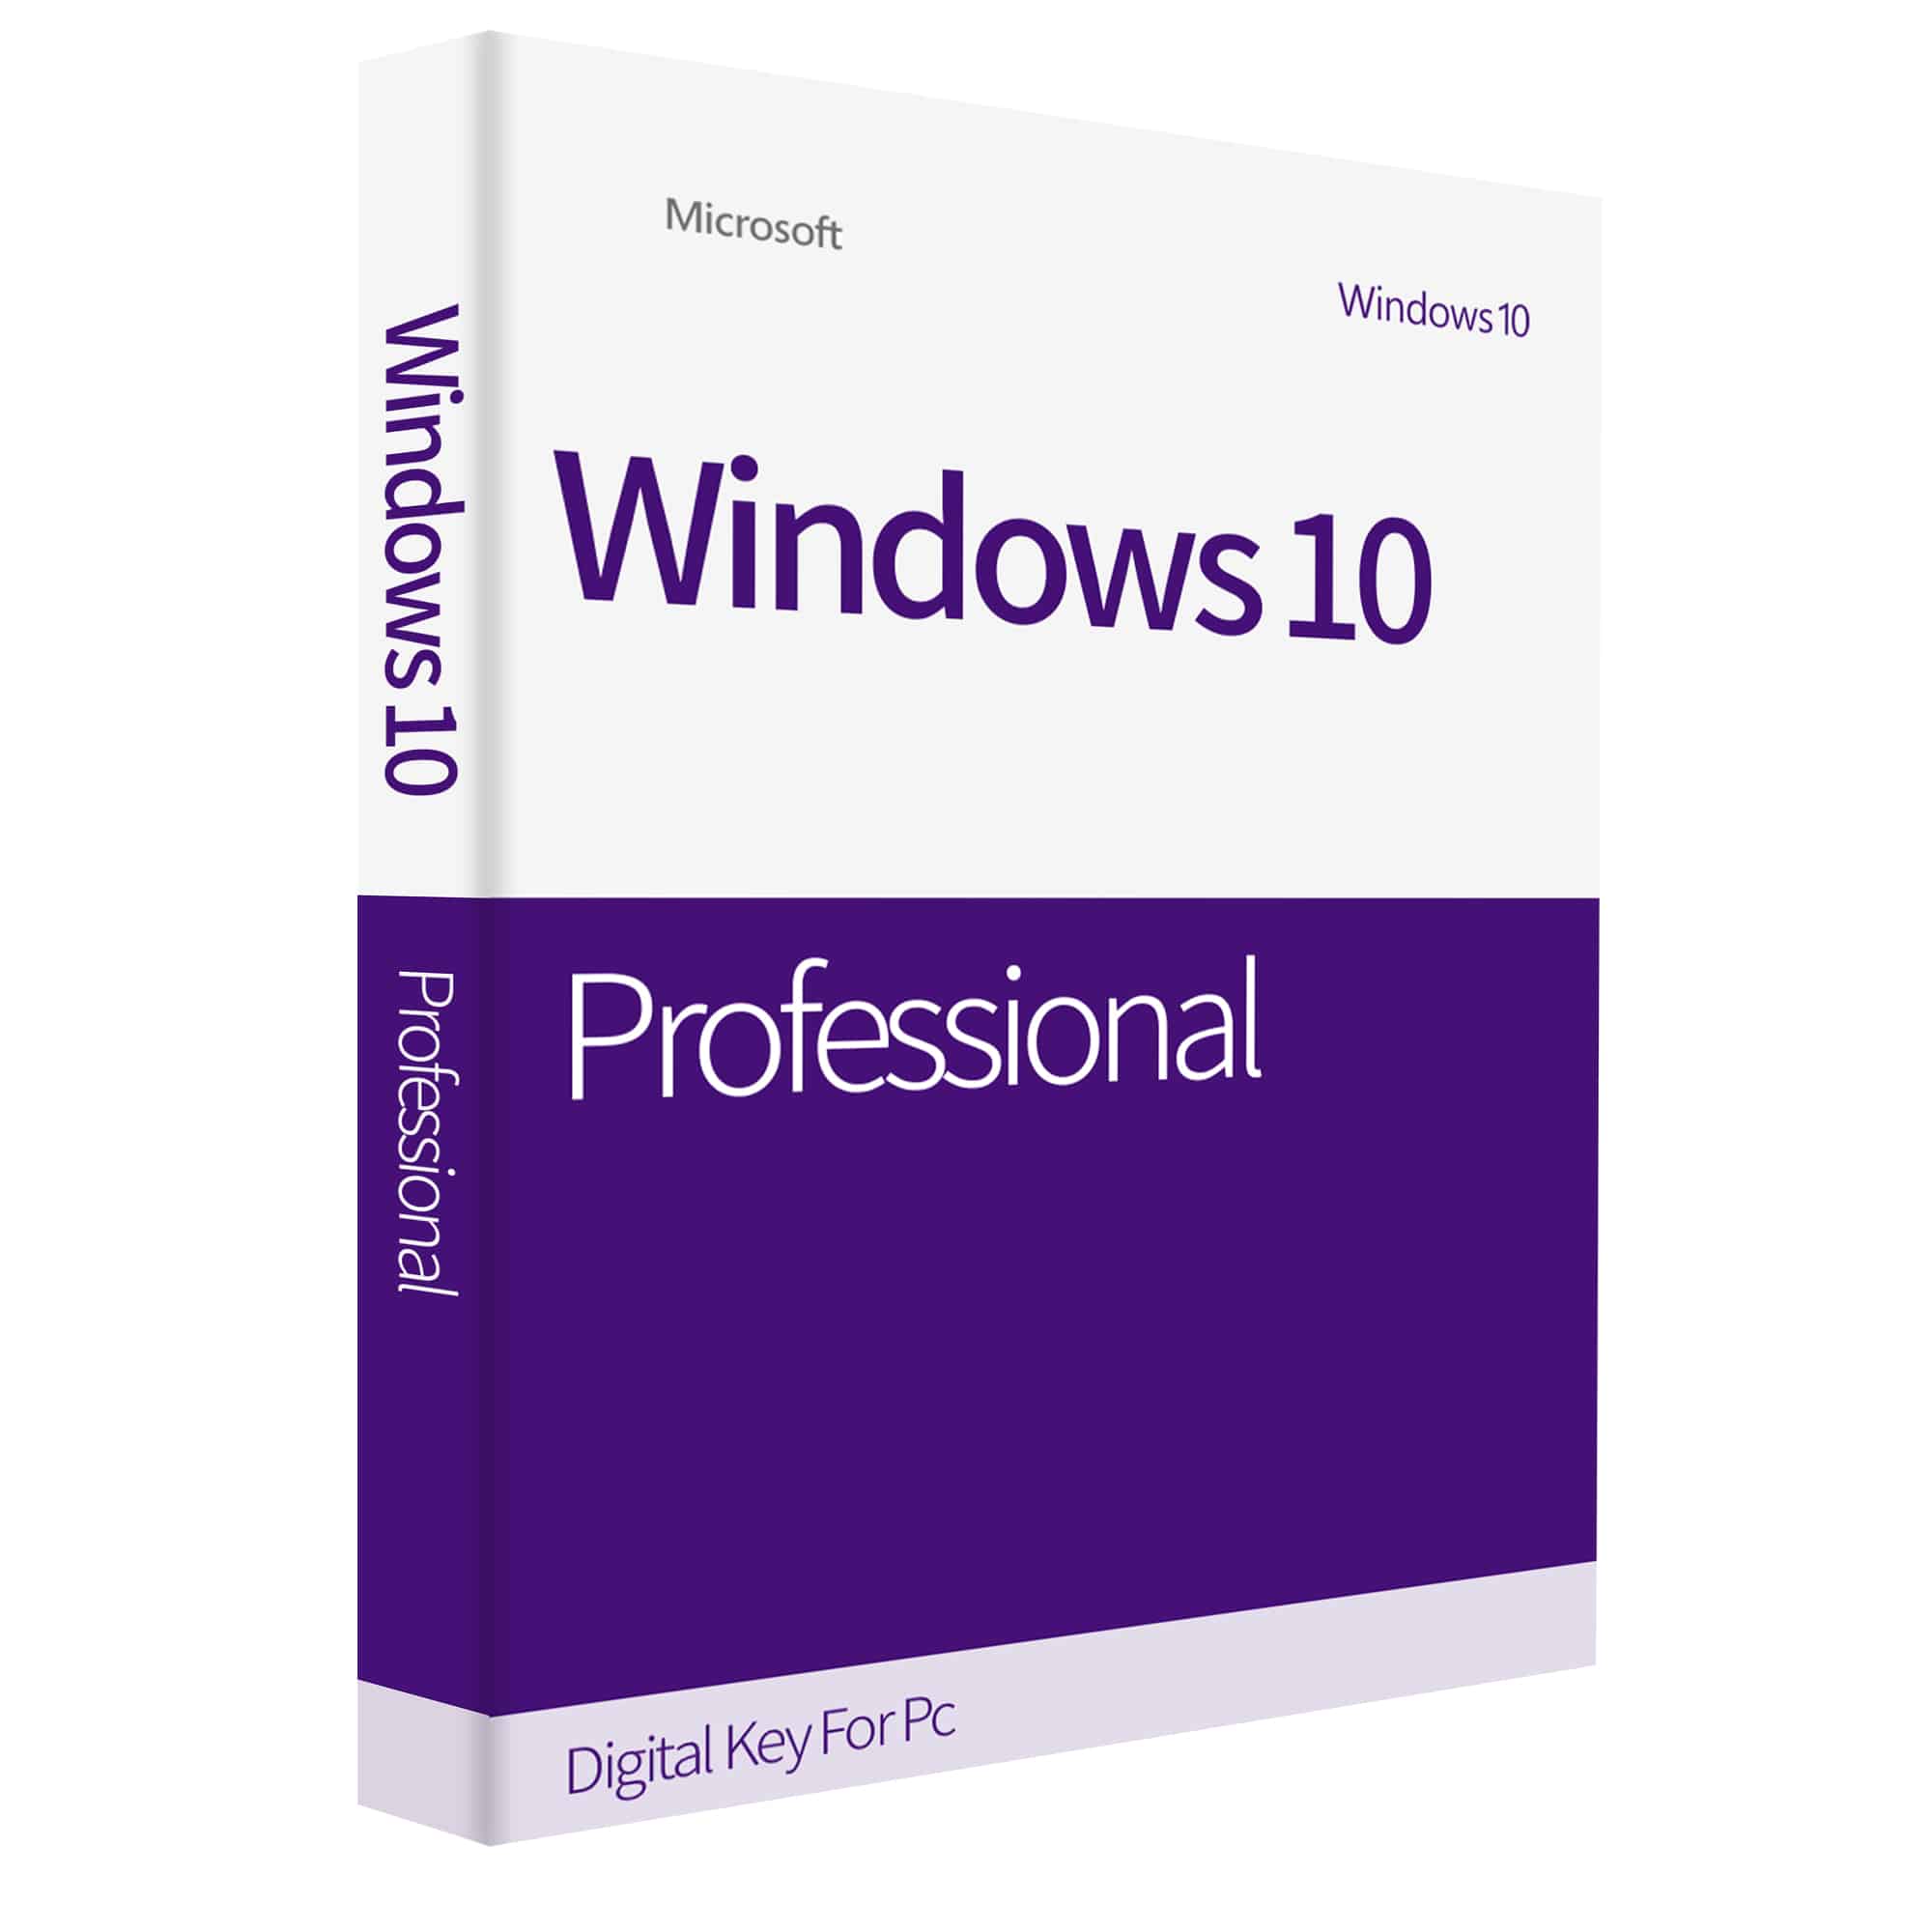 windows-10-pro